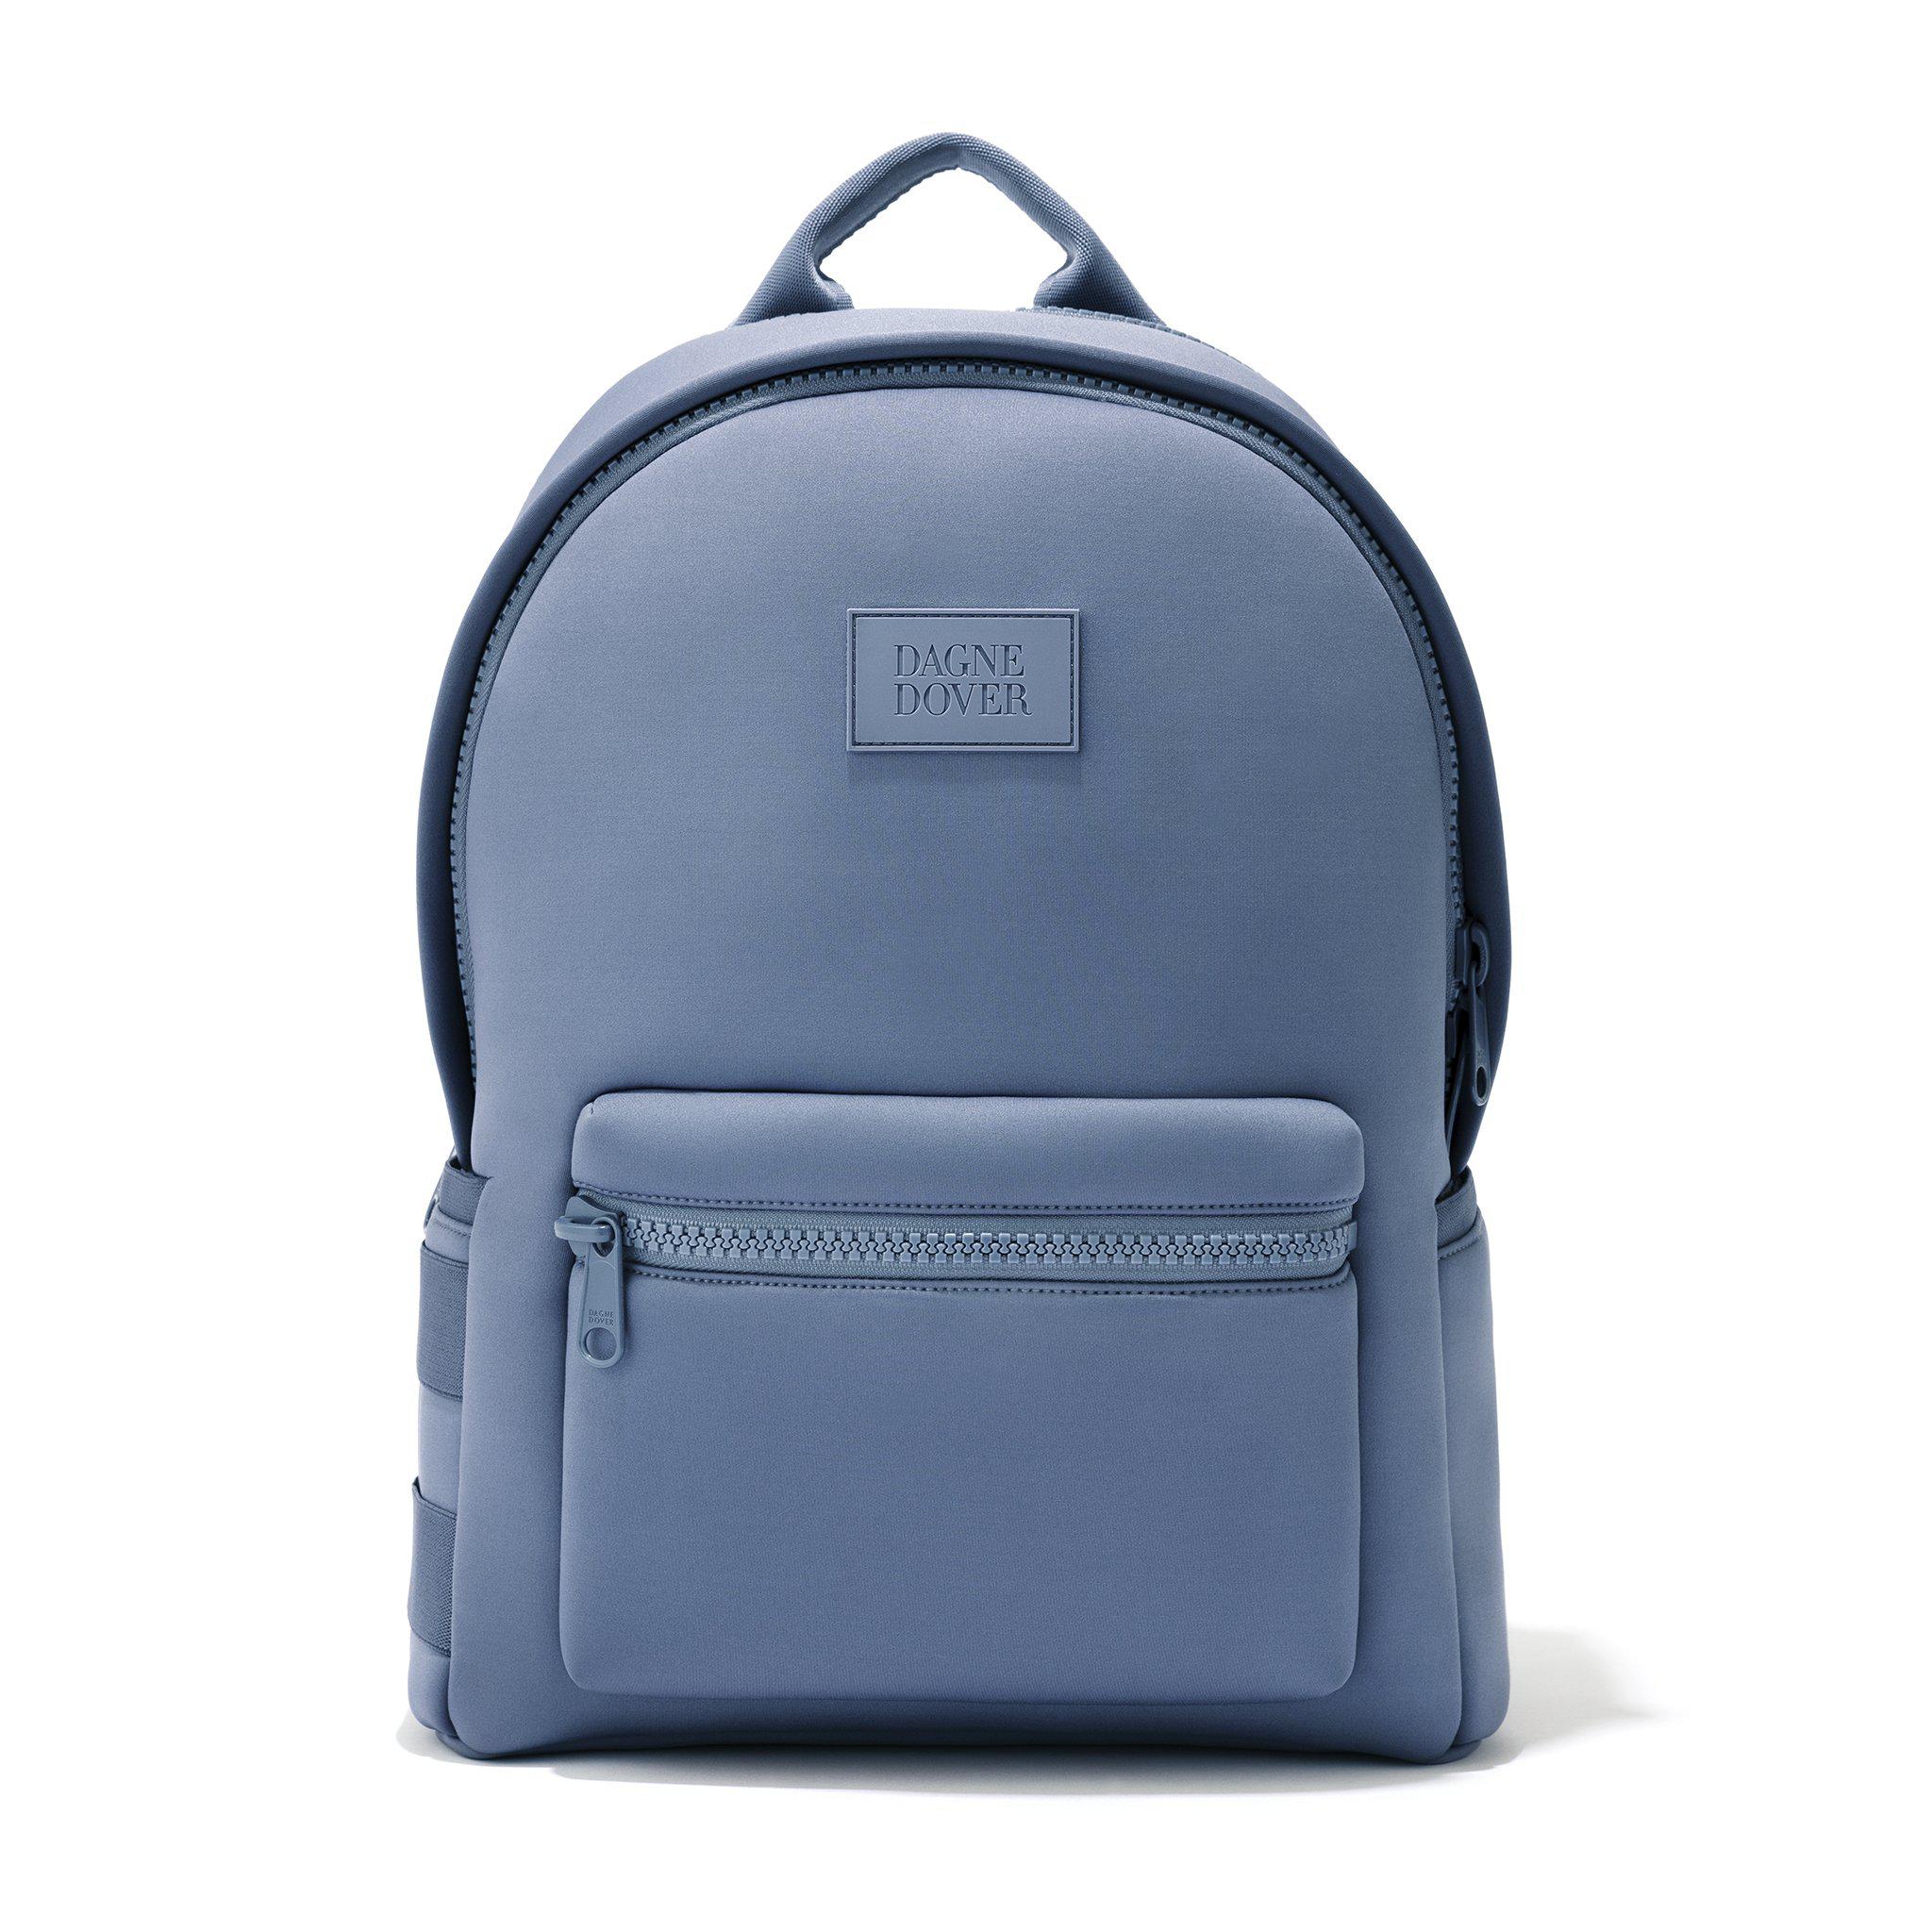 Dagne Dover Dakota Backpack In Ash Blue, Large - Lyst